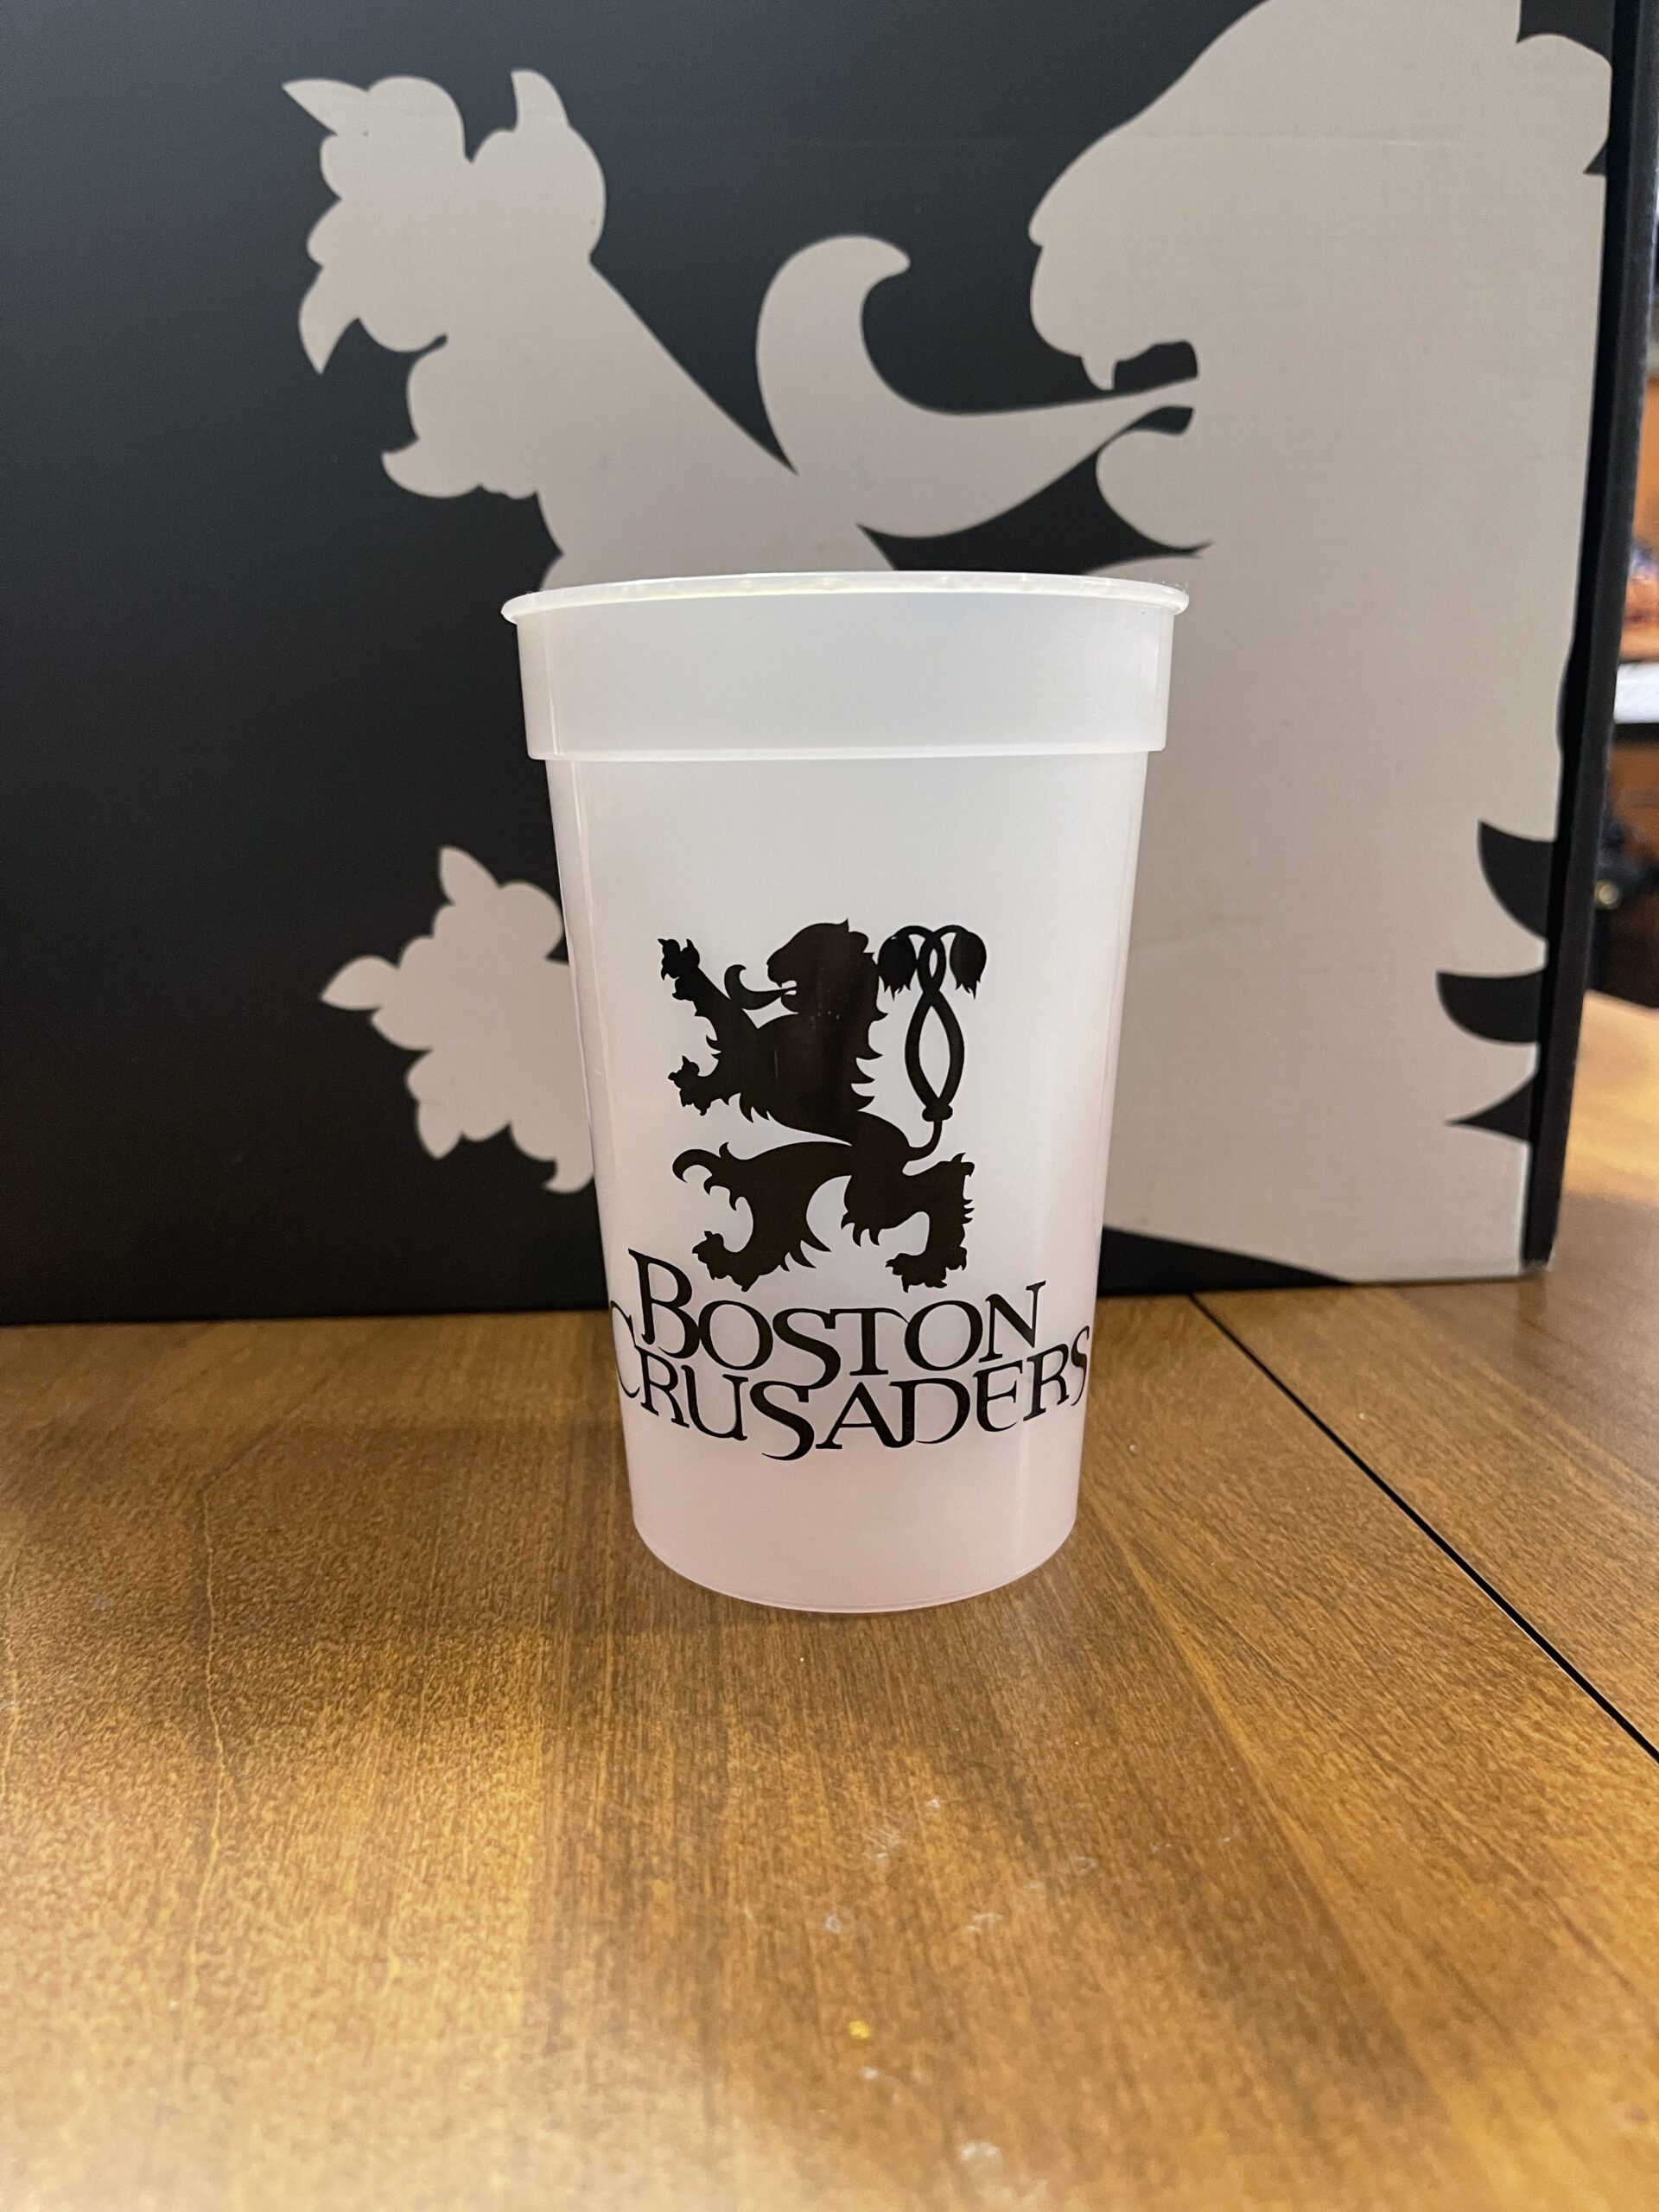 Boston Crusaders souvenir cup